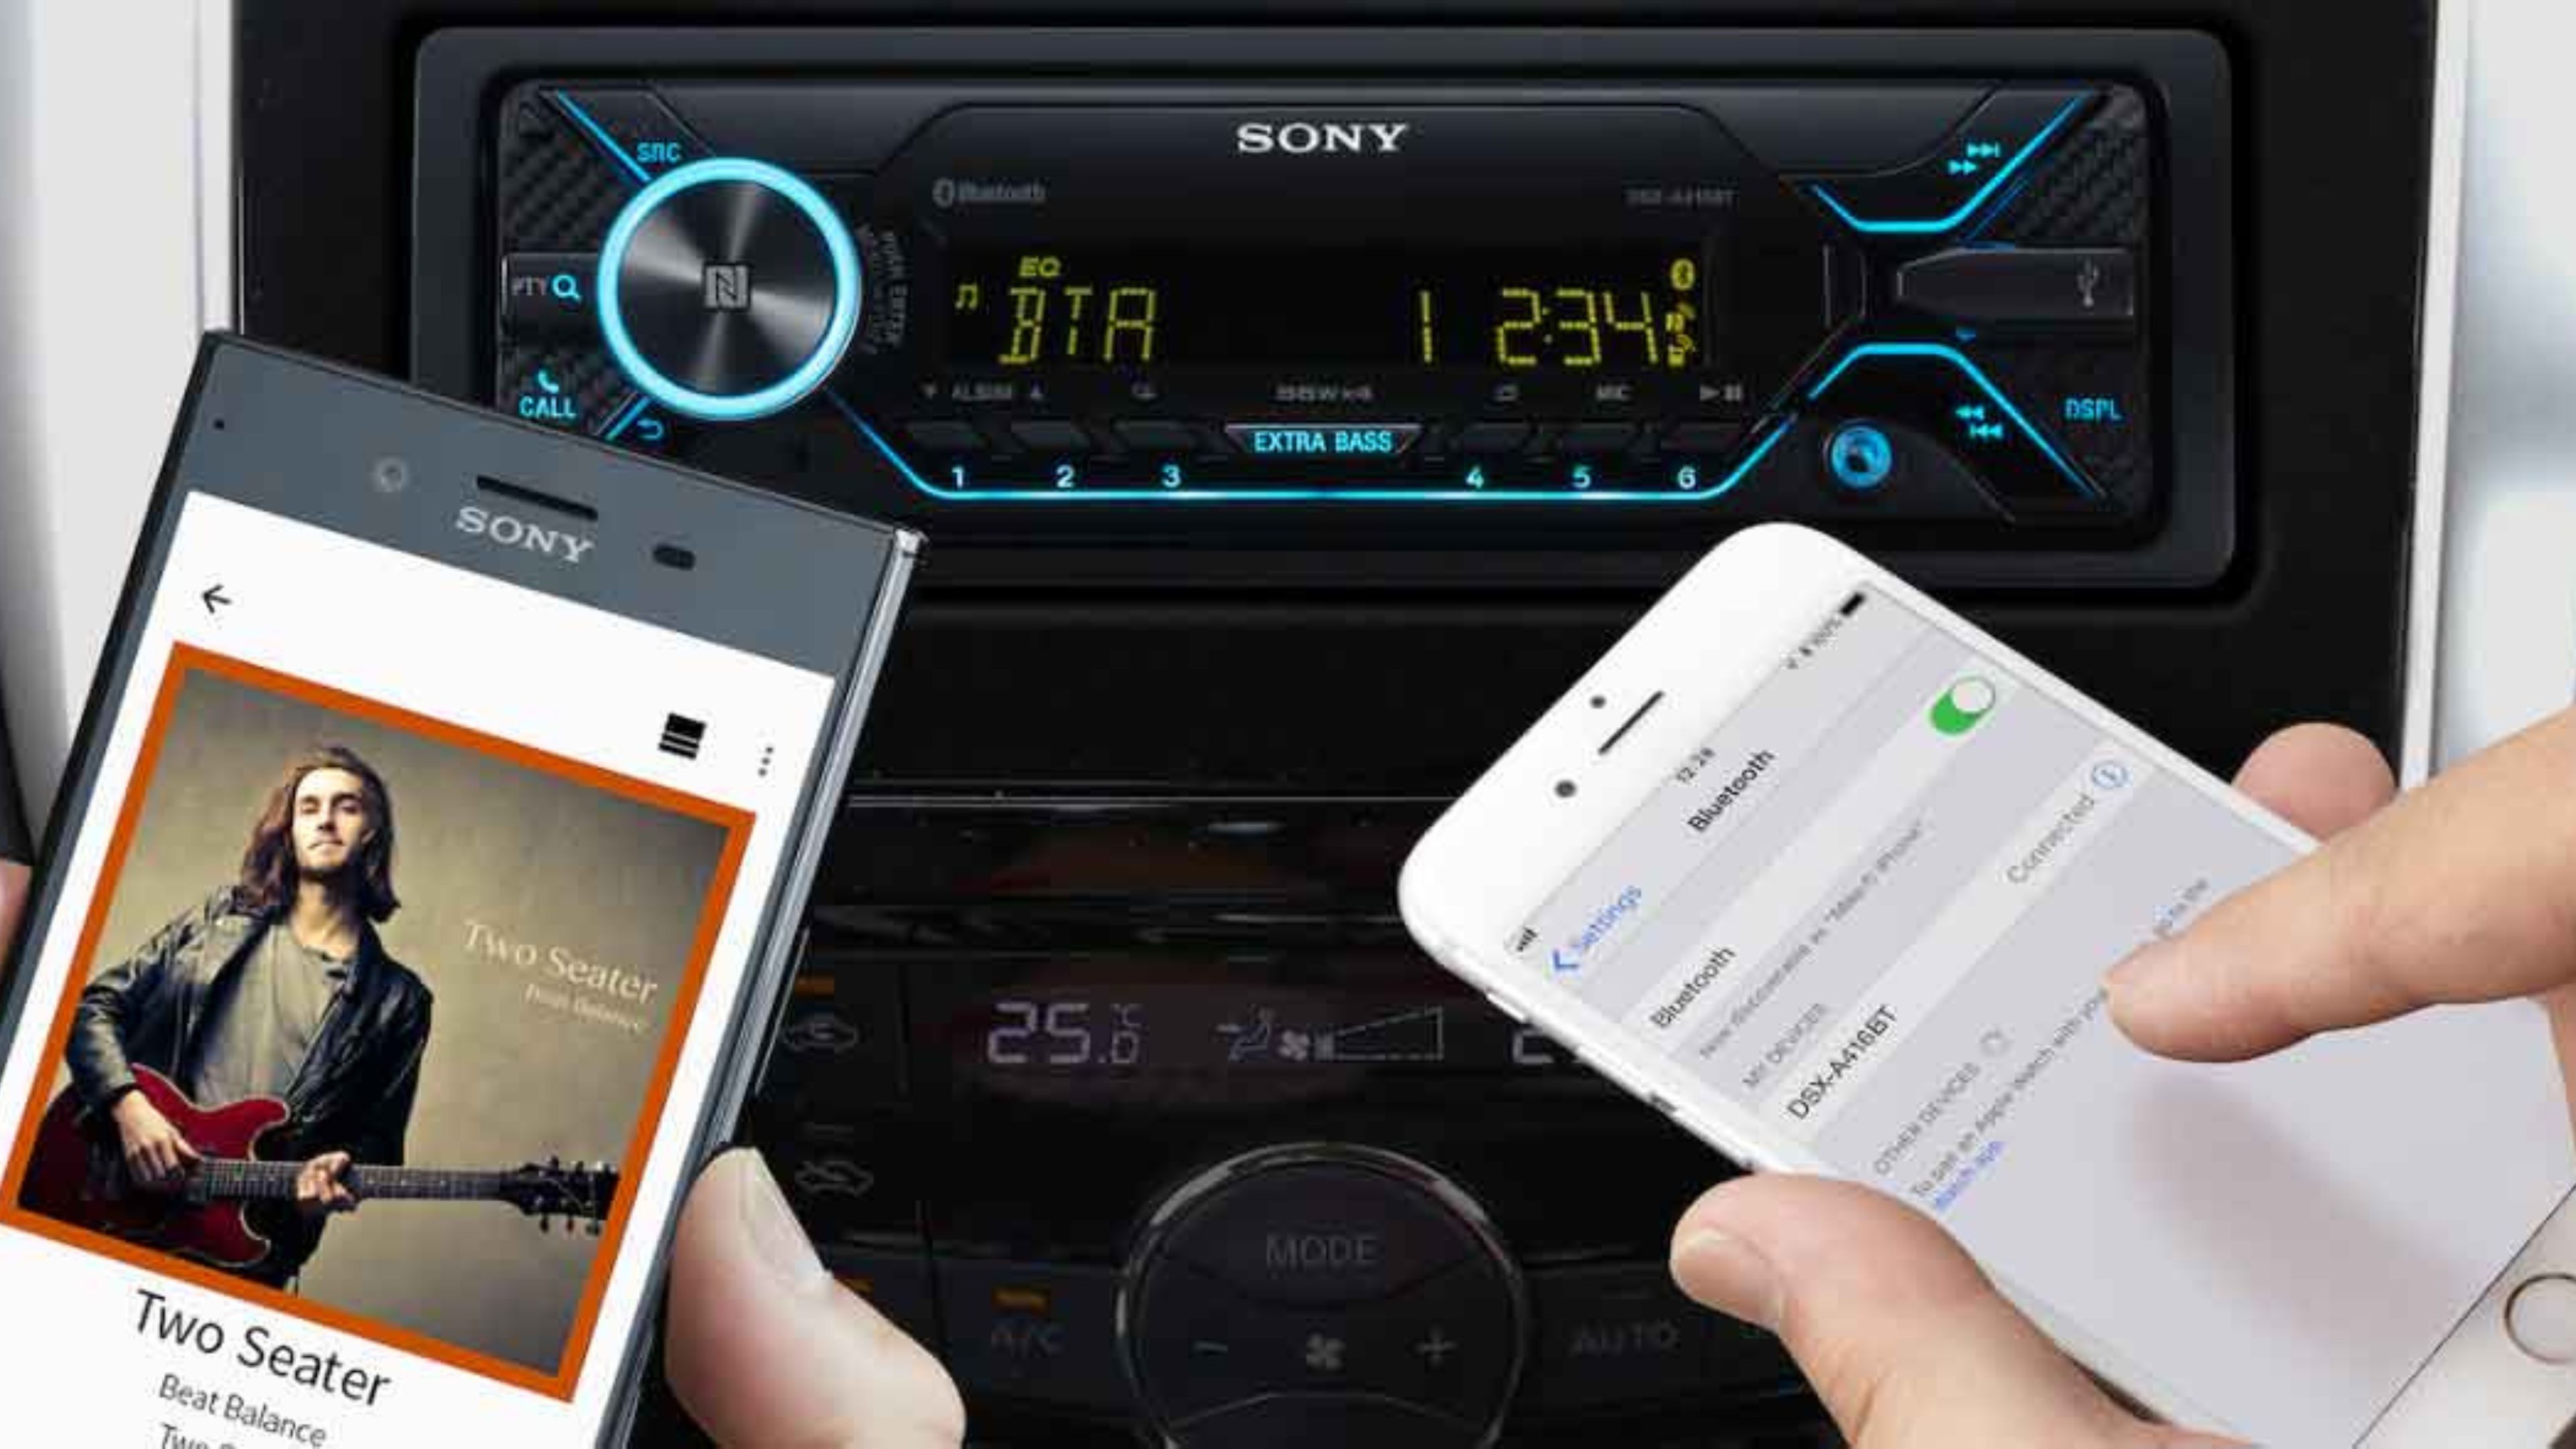 Esta autorradio Sony baja de precio y promete darle nueva vida multimedia a tu coche